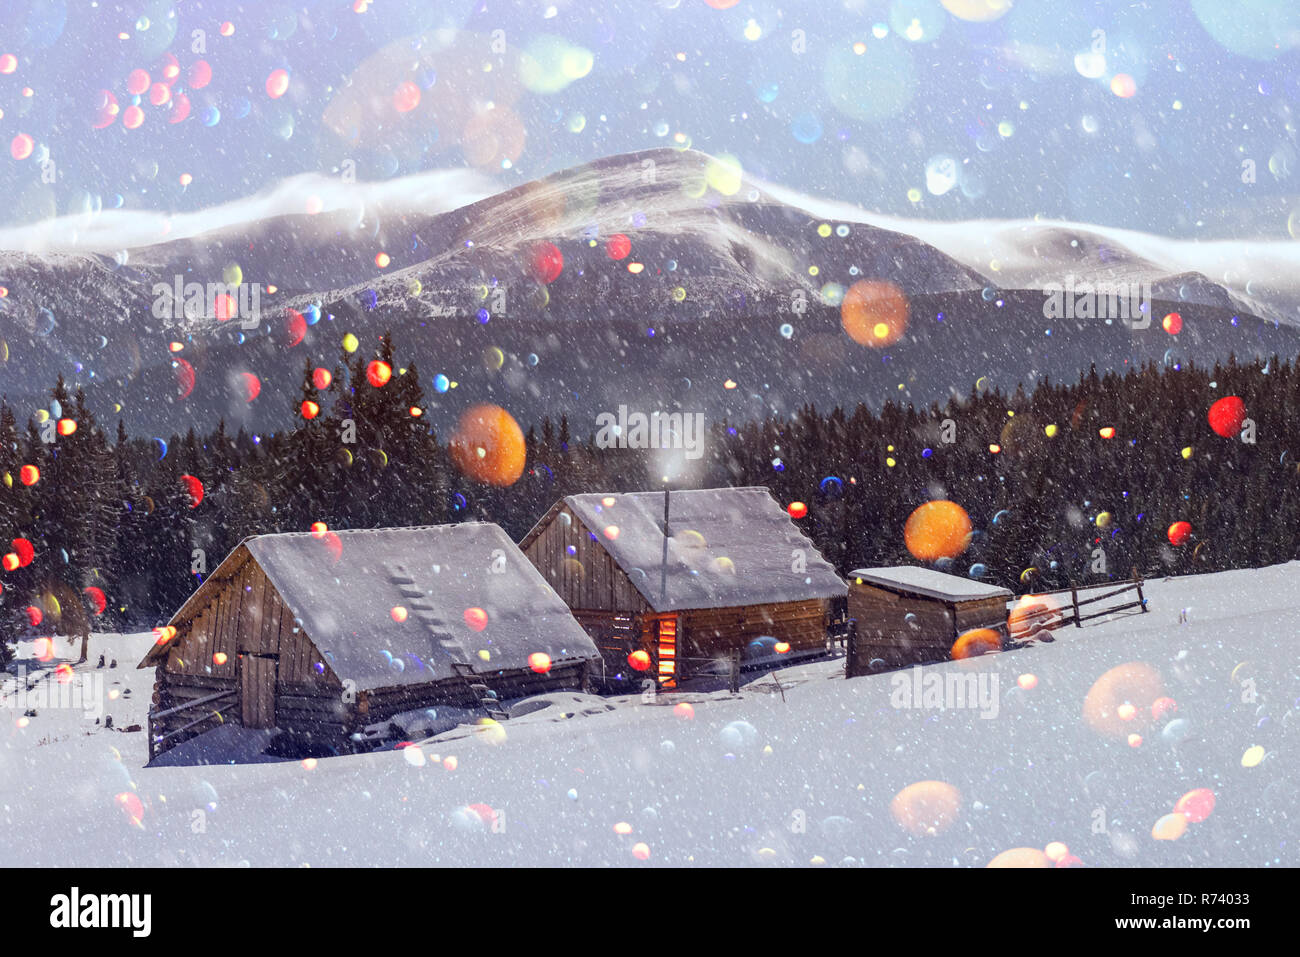 Nuit paysage fantastique glowing par clair de lune. Scène hivernale spectaculaire avec snowy chambre. Carte postale de vacances de Noël collage. Lumière effet bokeh DOF post-traitement Banque D'Images